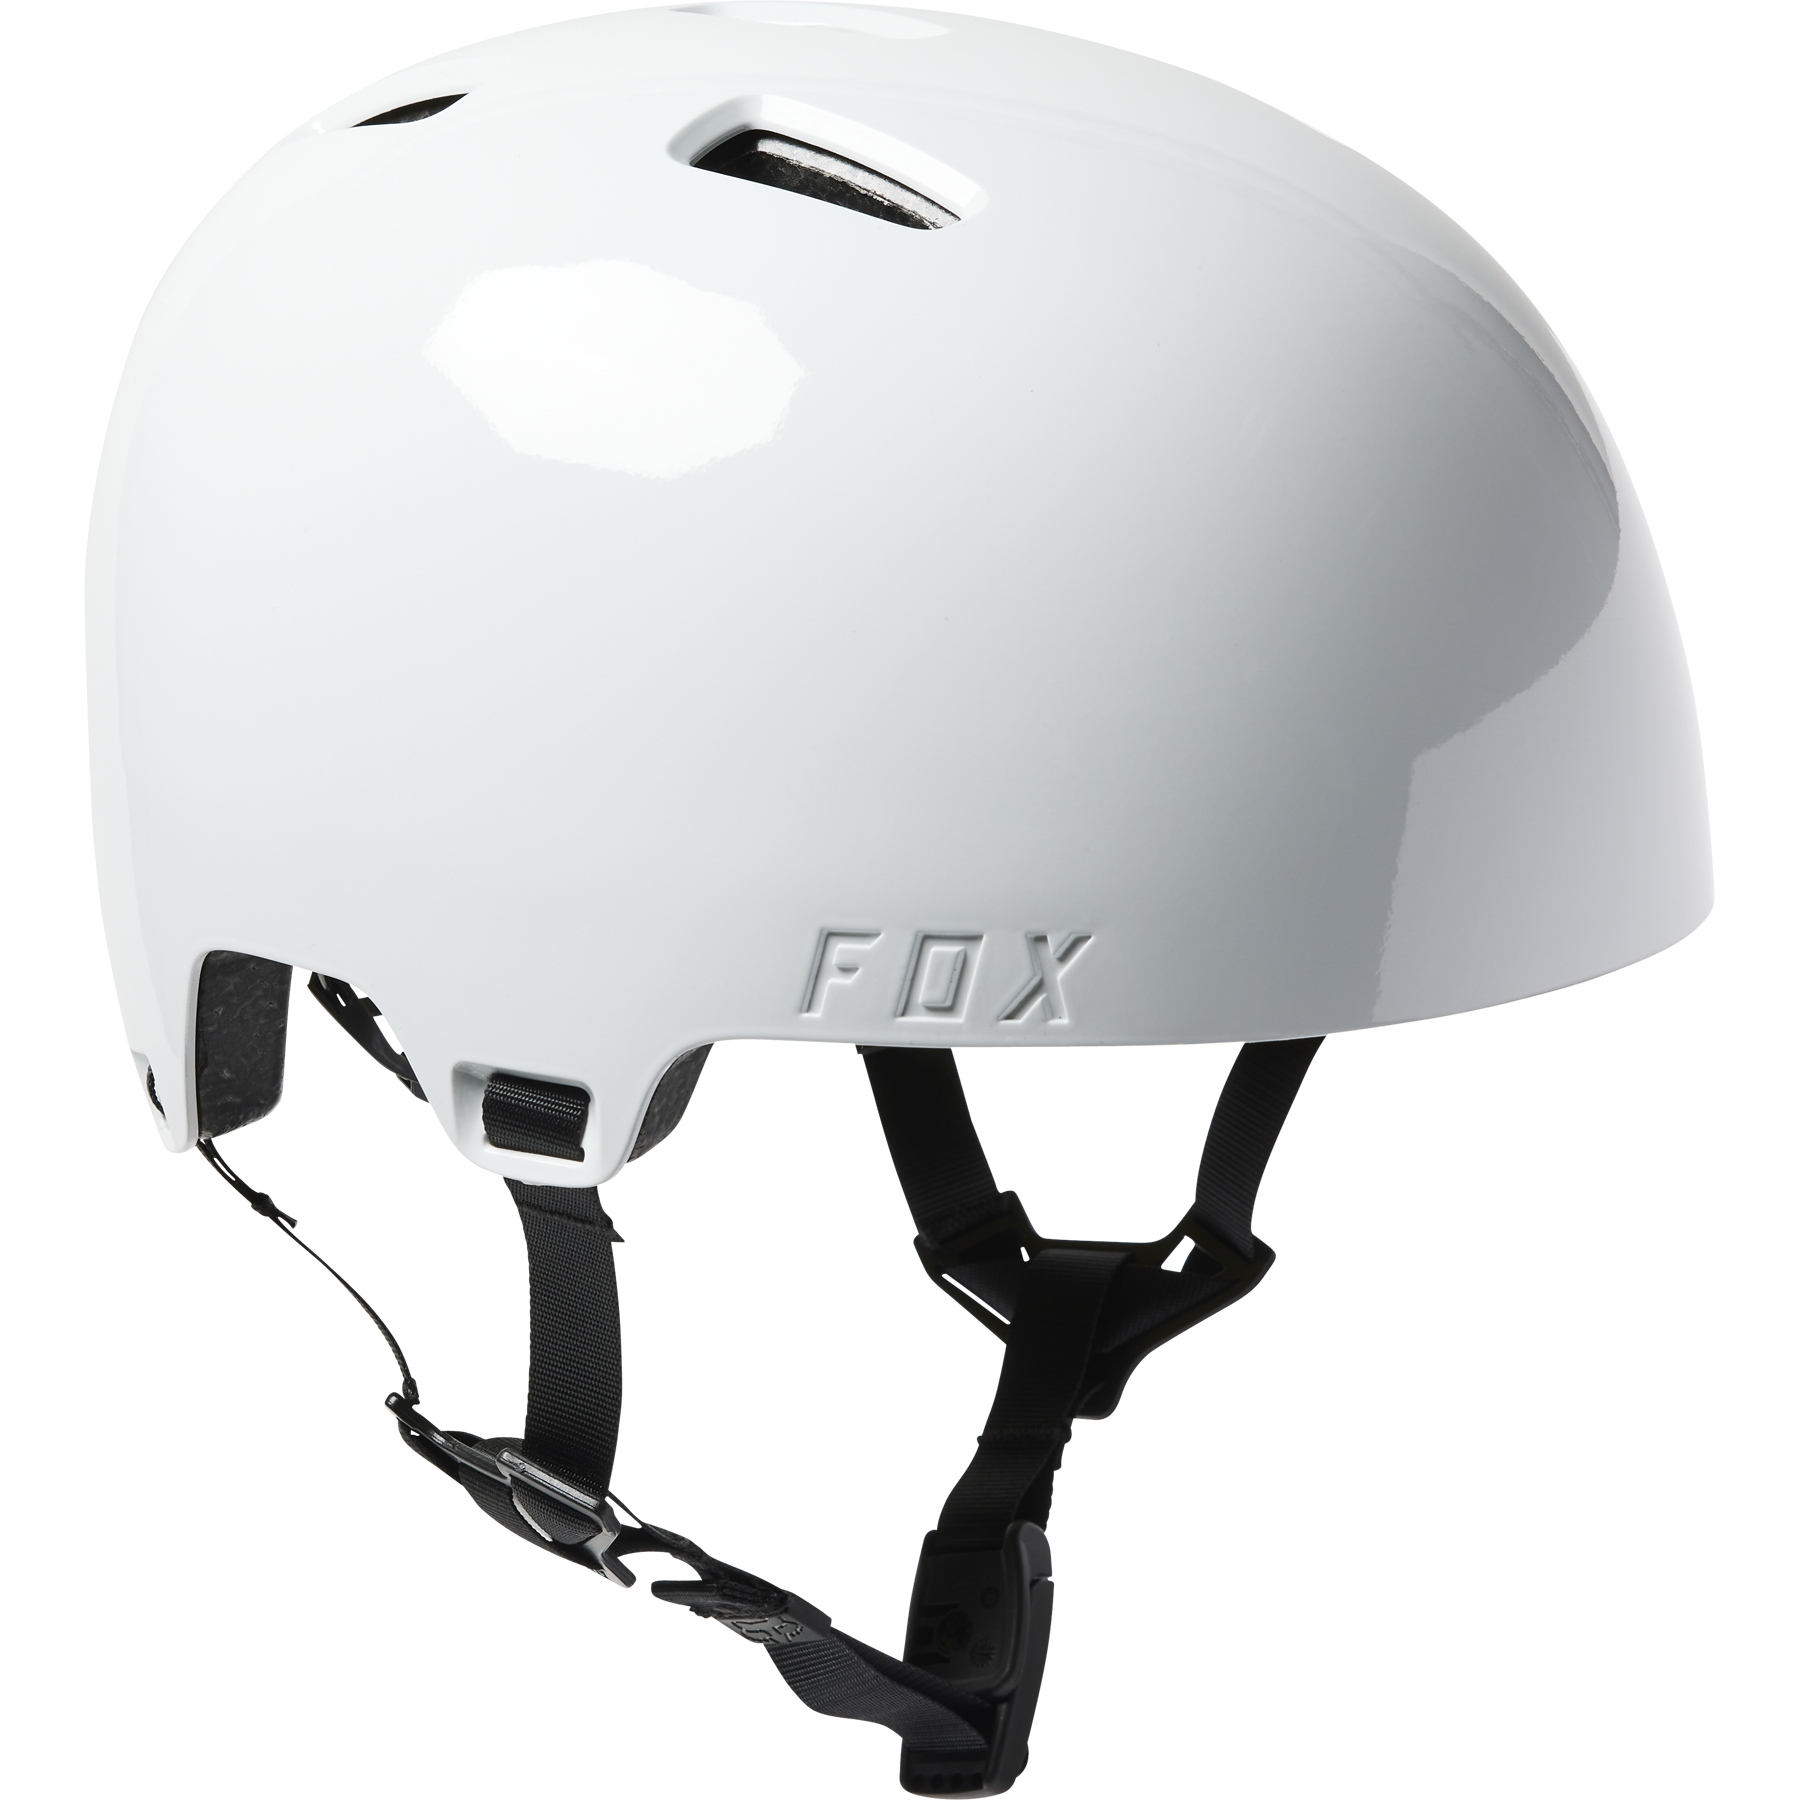 Produktbild von FOX Flight Pro MIPS Helm - weiß